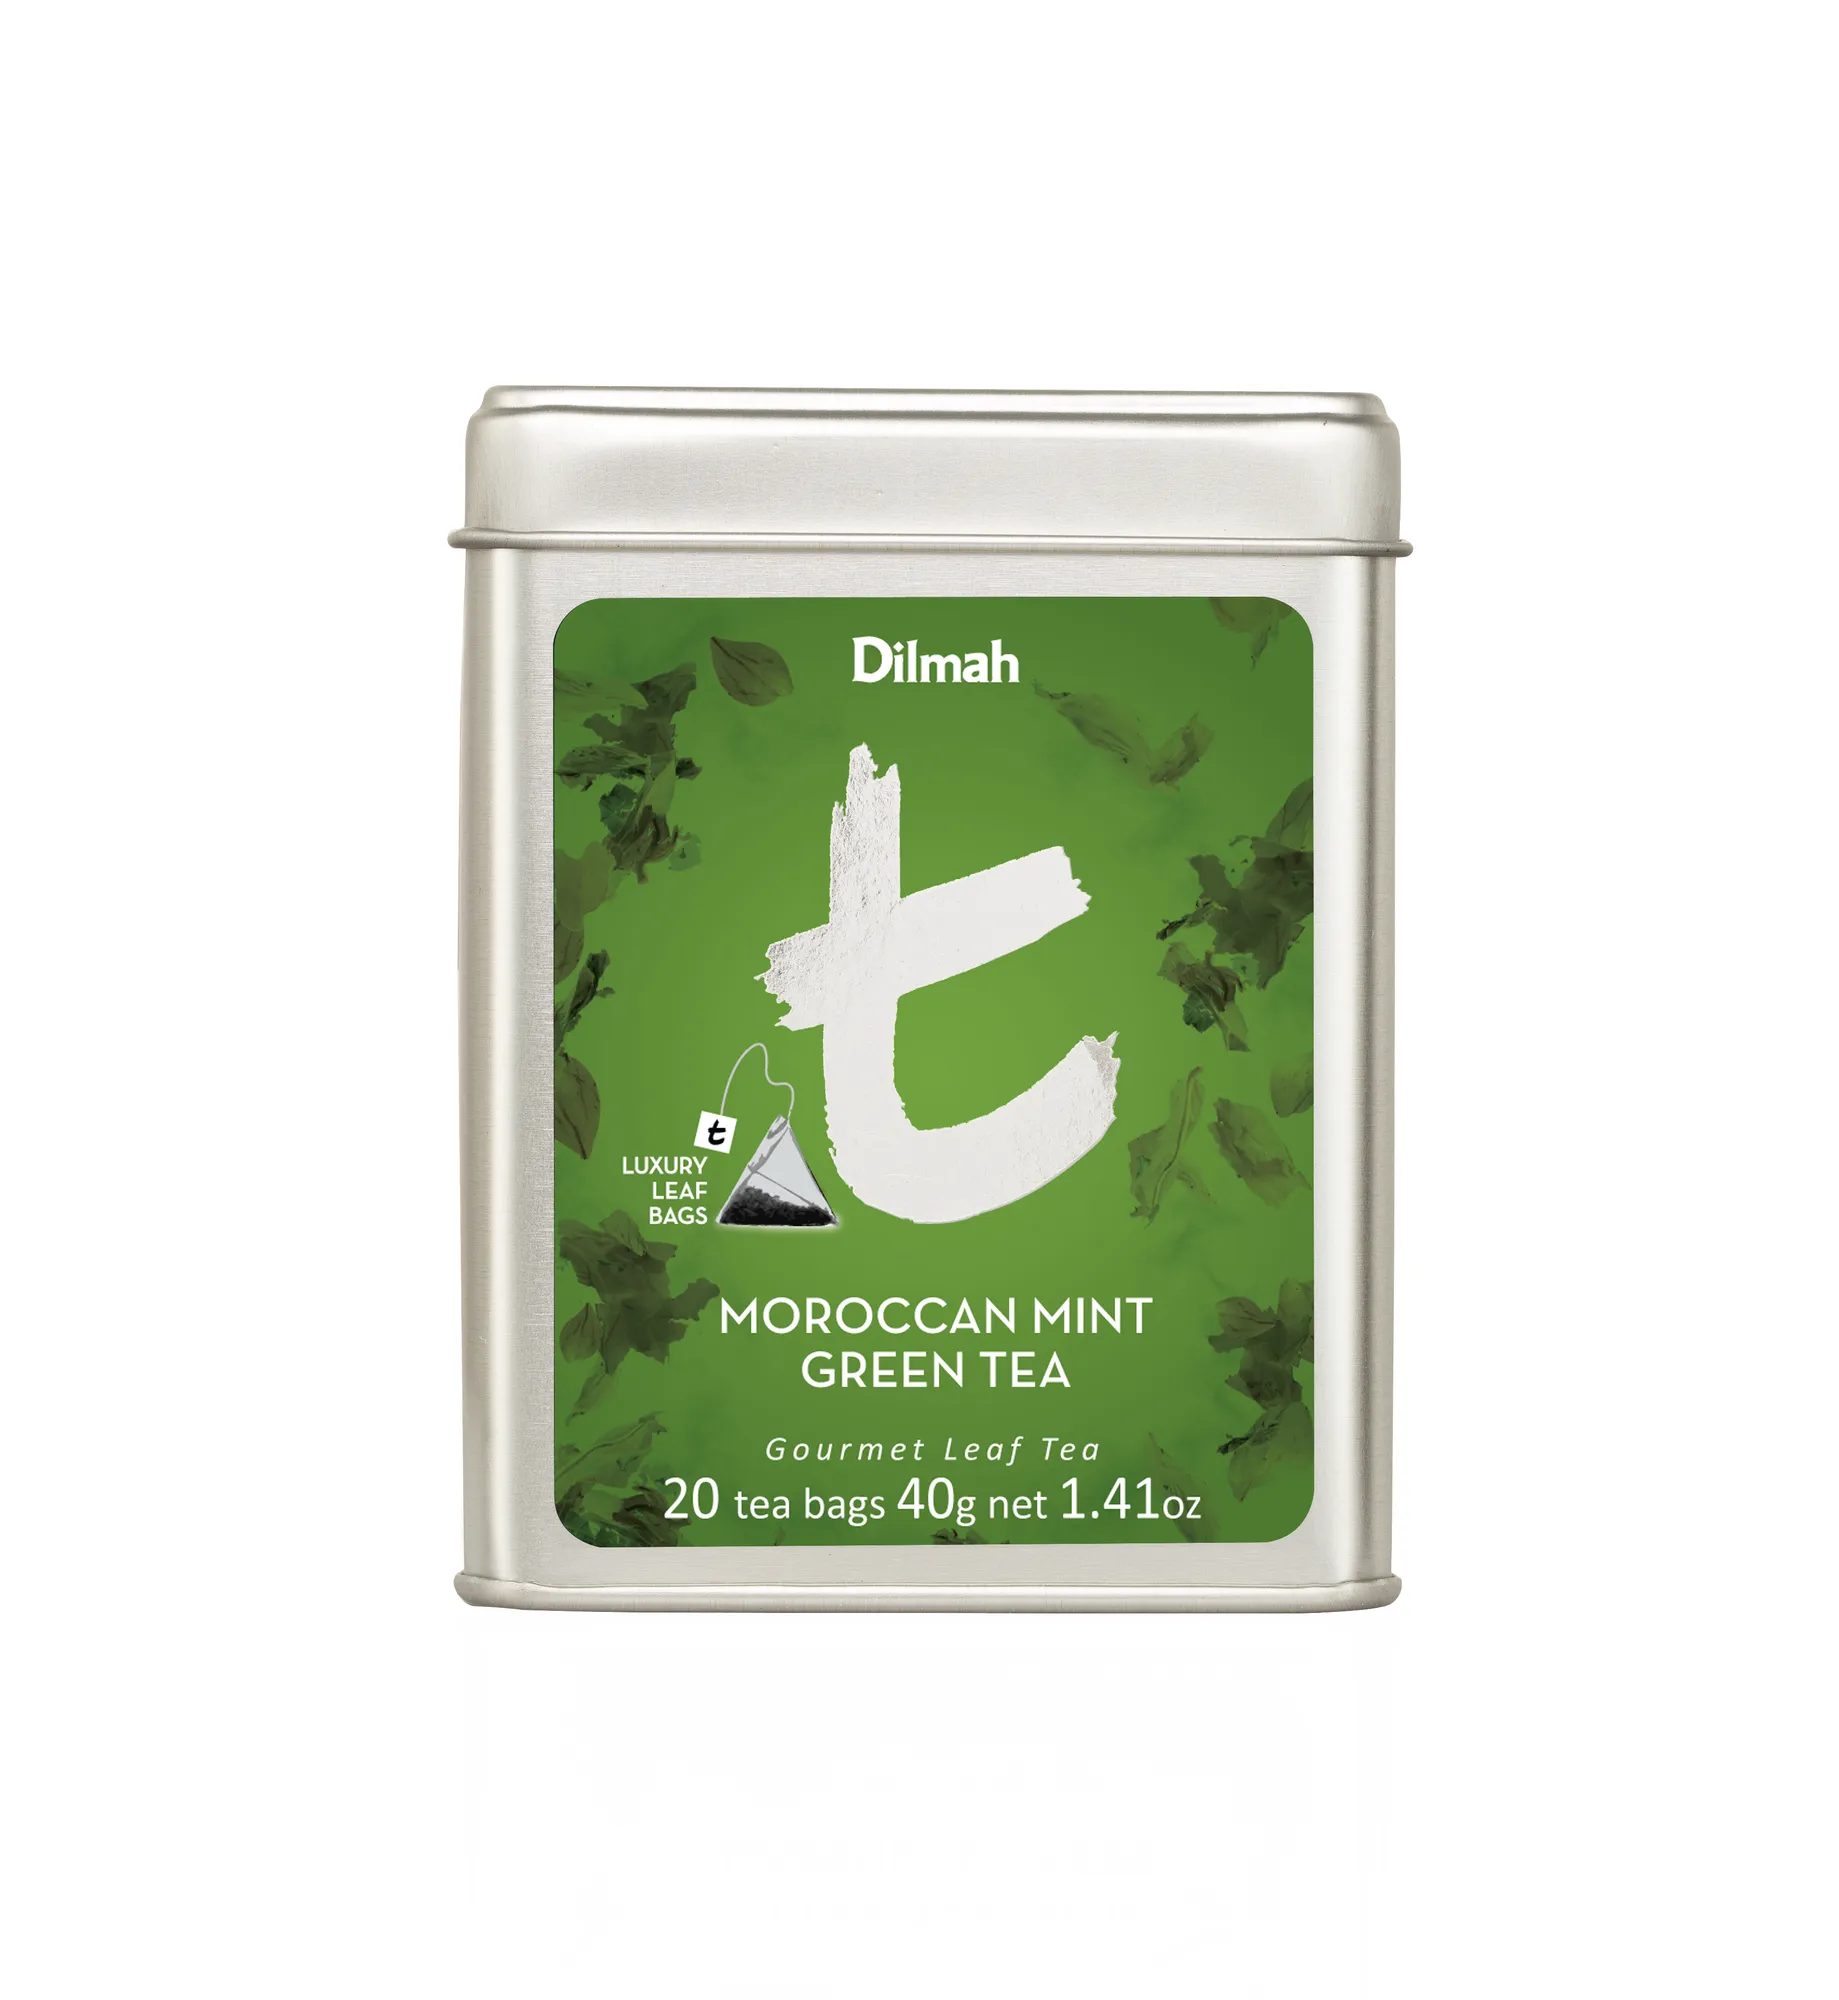 20 tea bags of Moroccan Mint Green Tea in tin